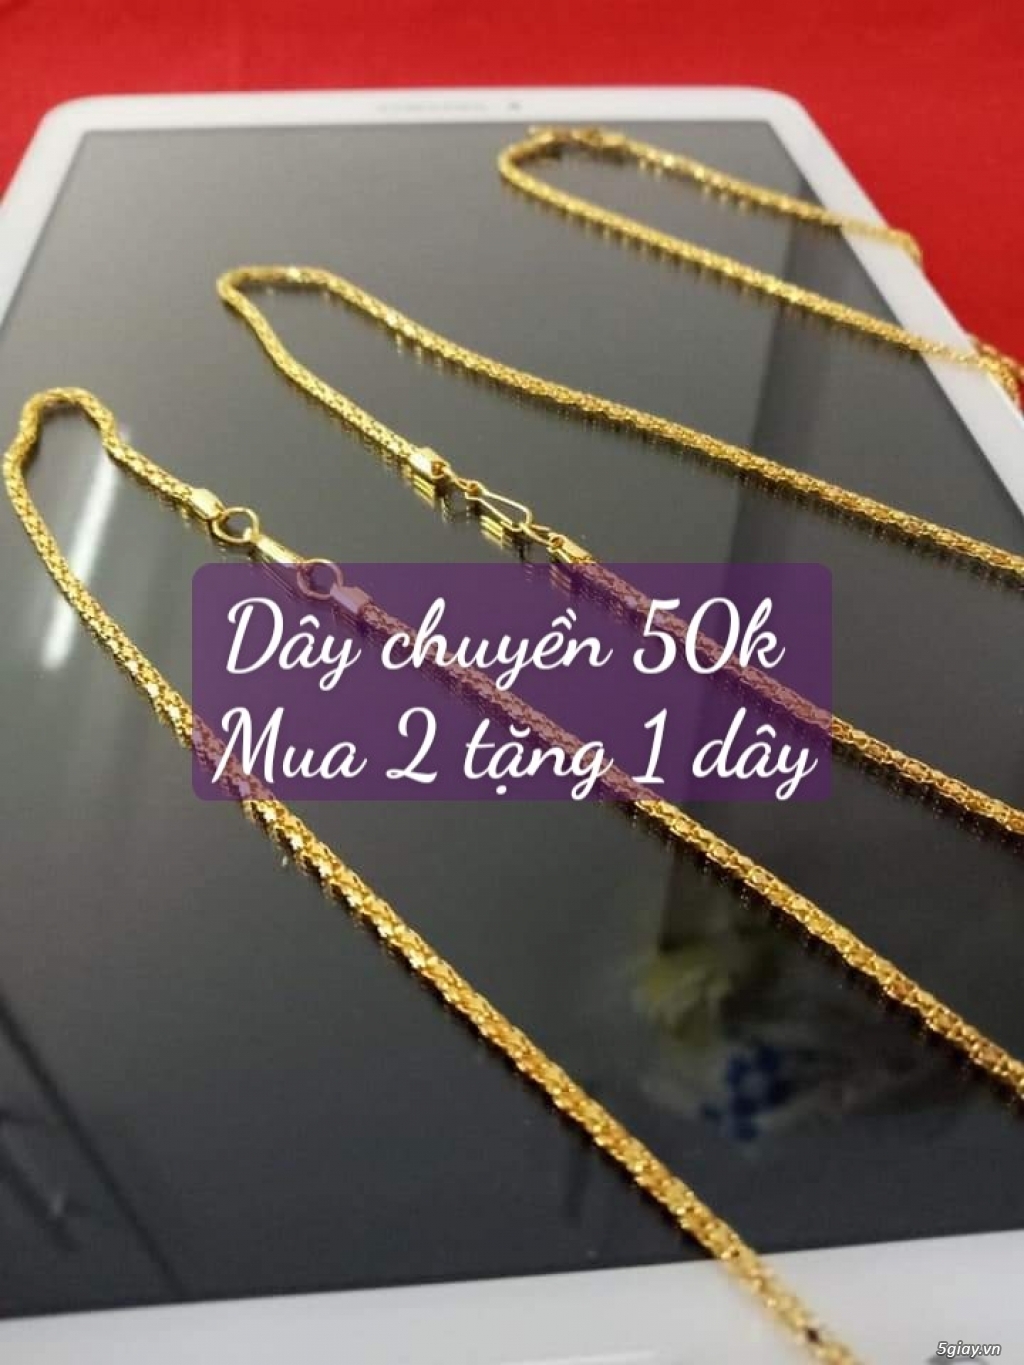 Bán dây chuyền mạ vàng dùng đeo hàng ngày giá 50k/ 1 dây ( có shopee) - 3